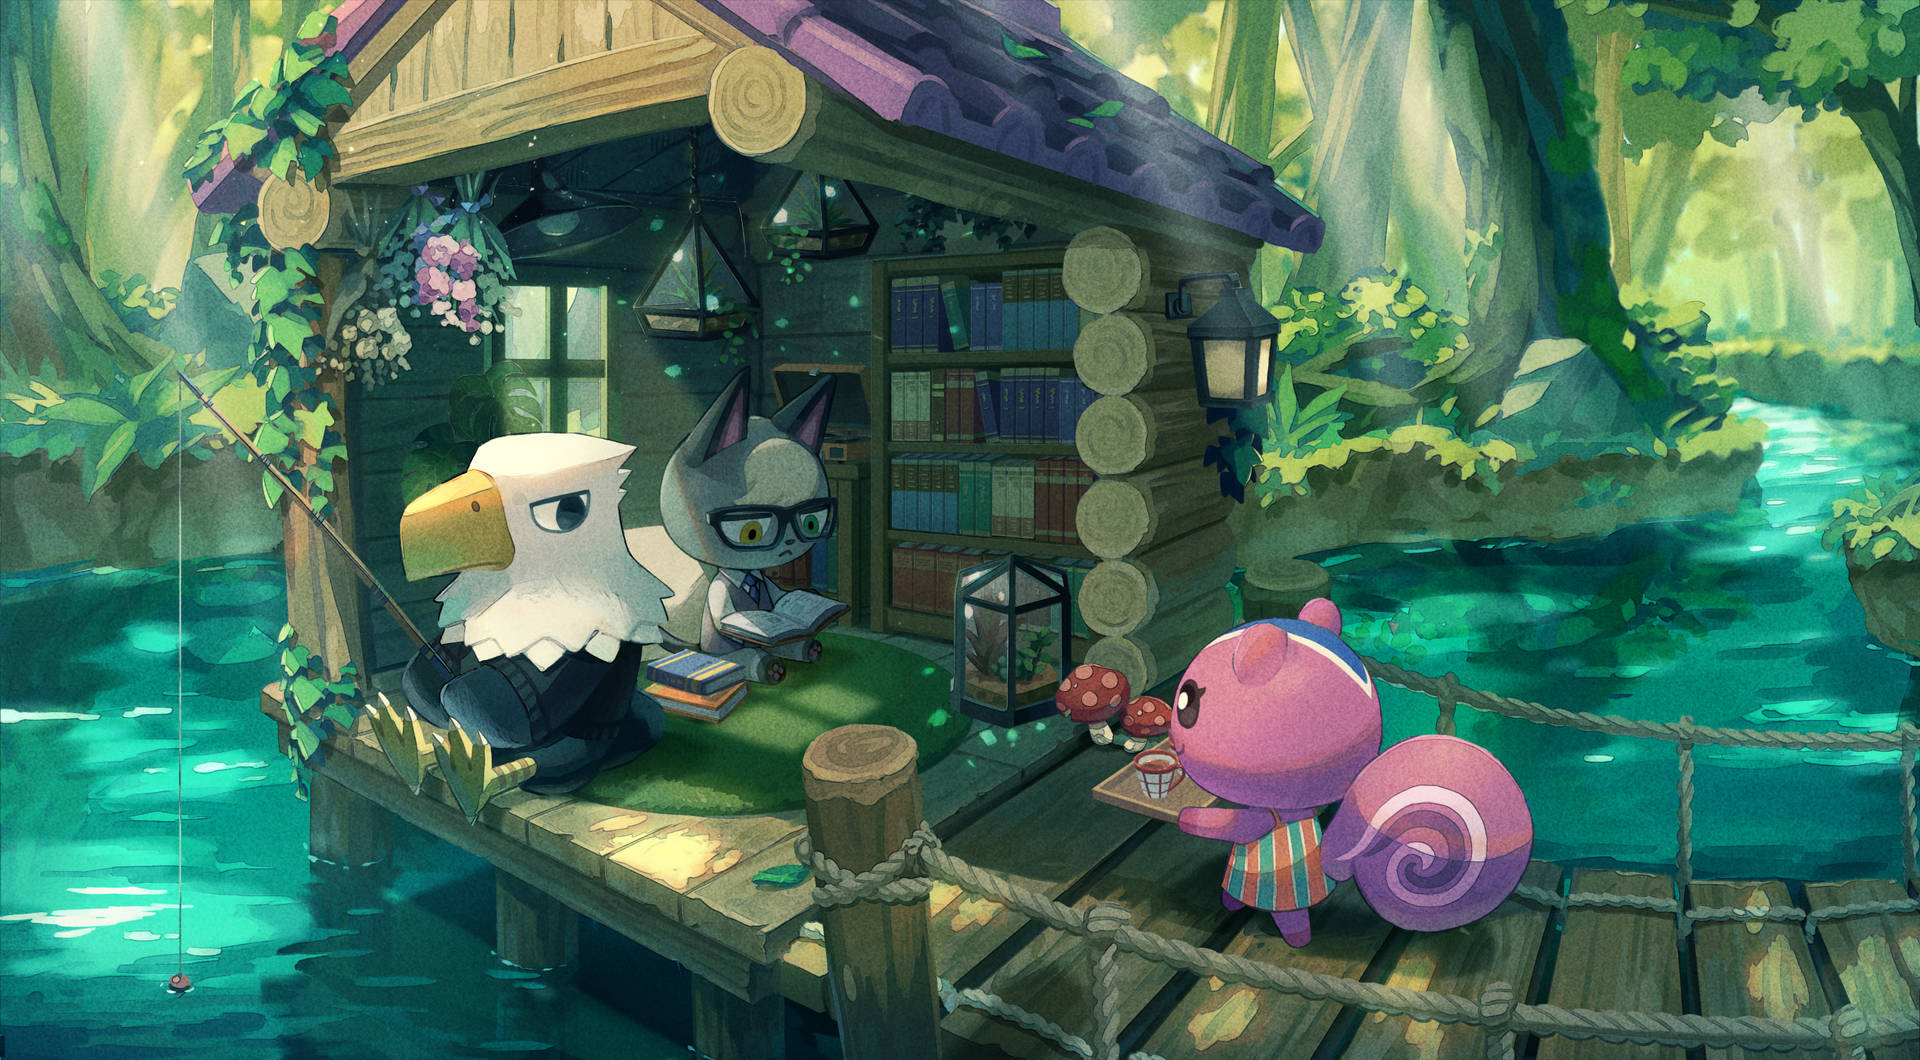 Adesfrutar Do Calor Do Verão Em Animal Crossing: New Horizons Com A Ankha, A Gata. Papel de Parede